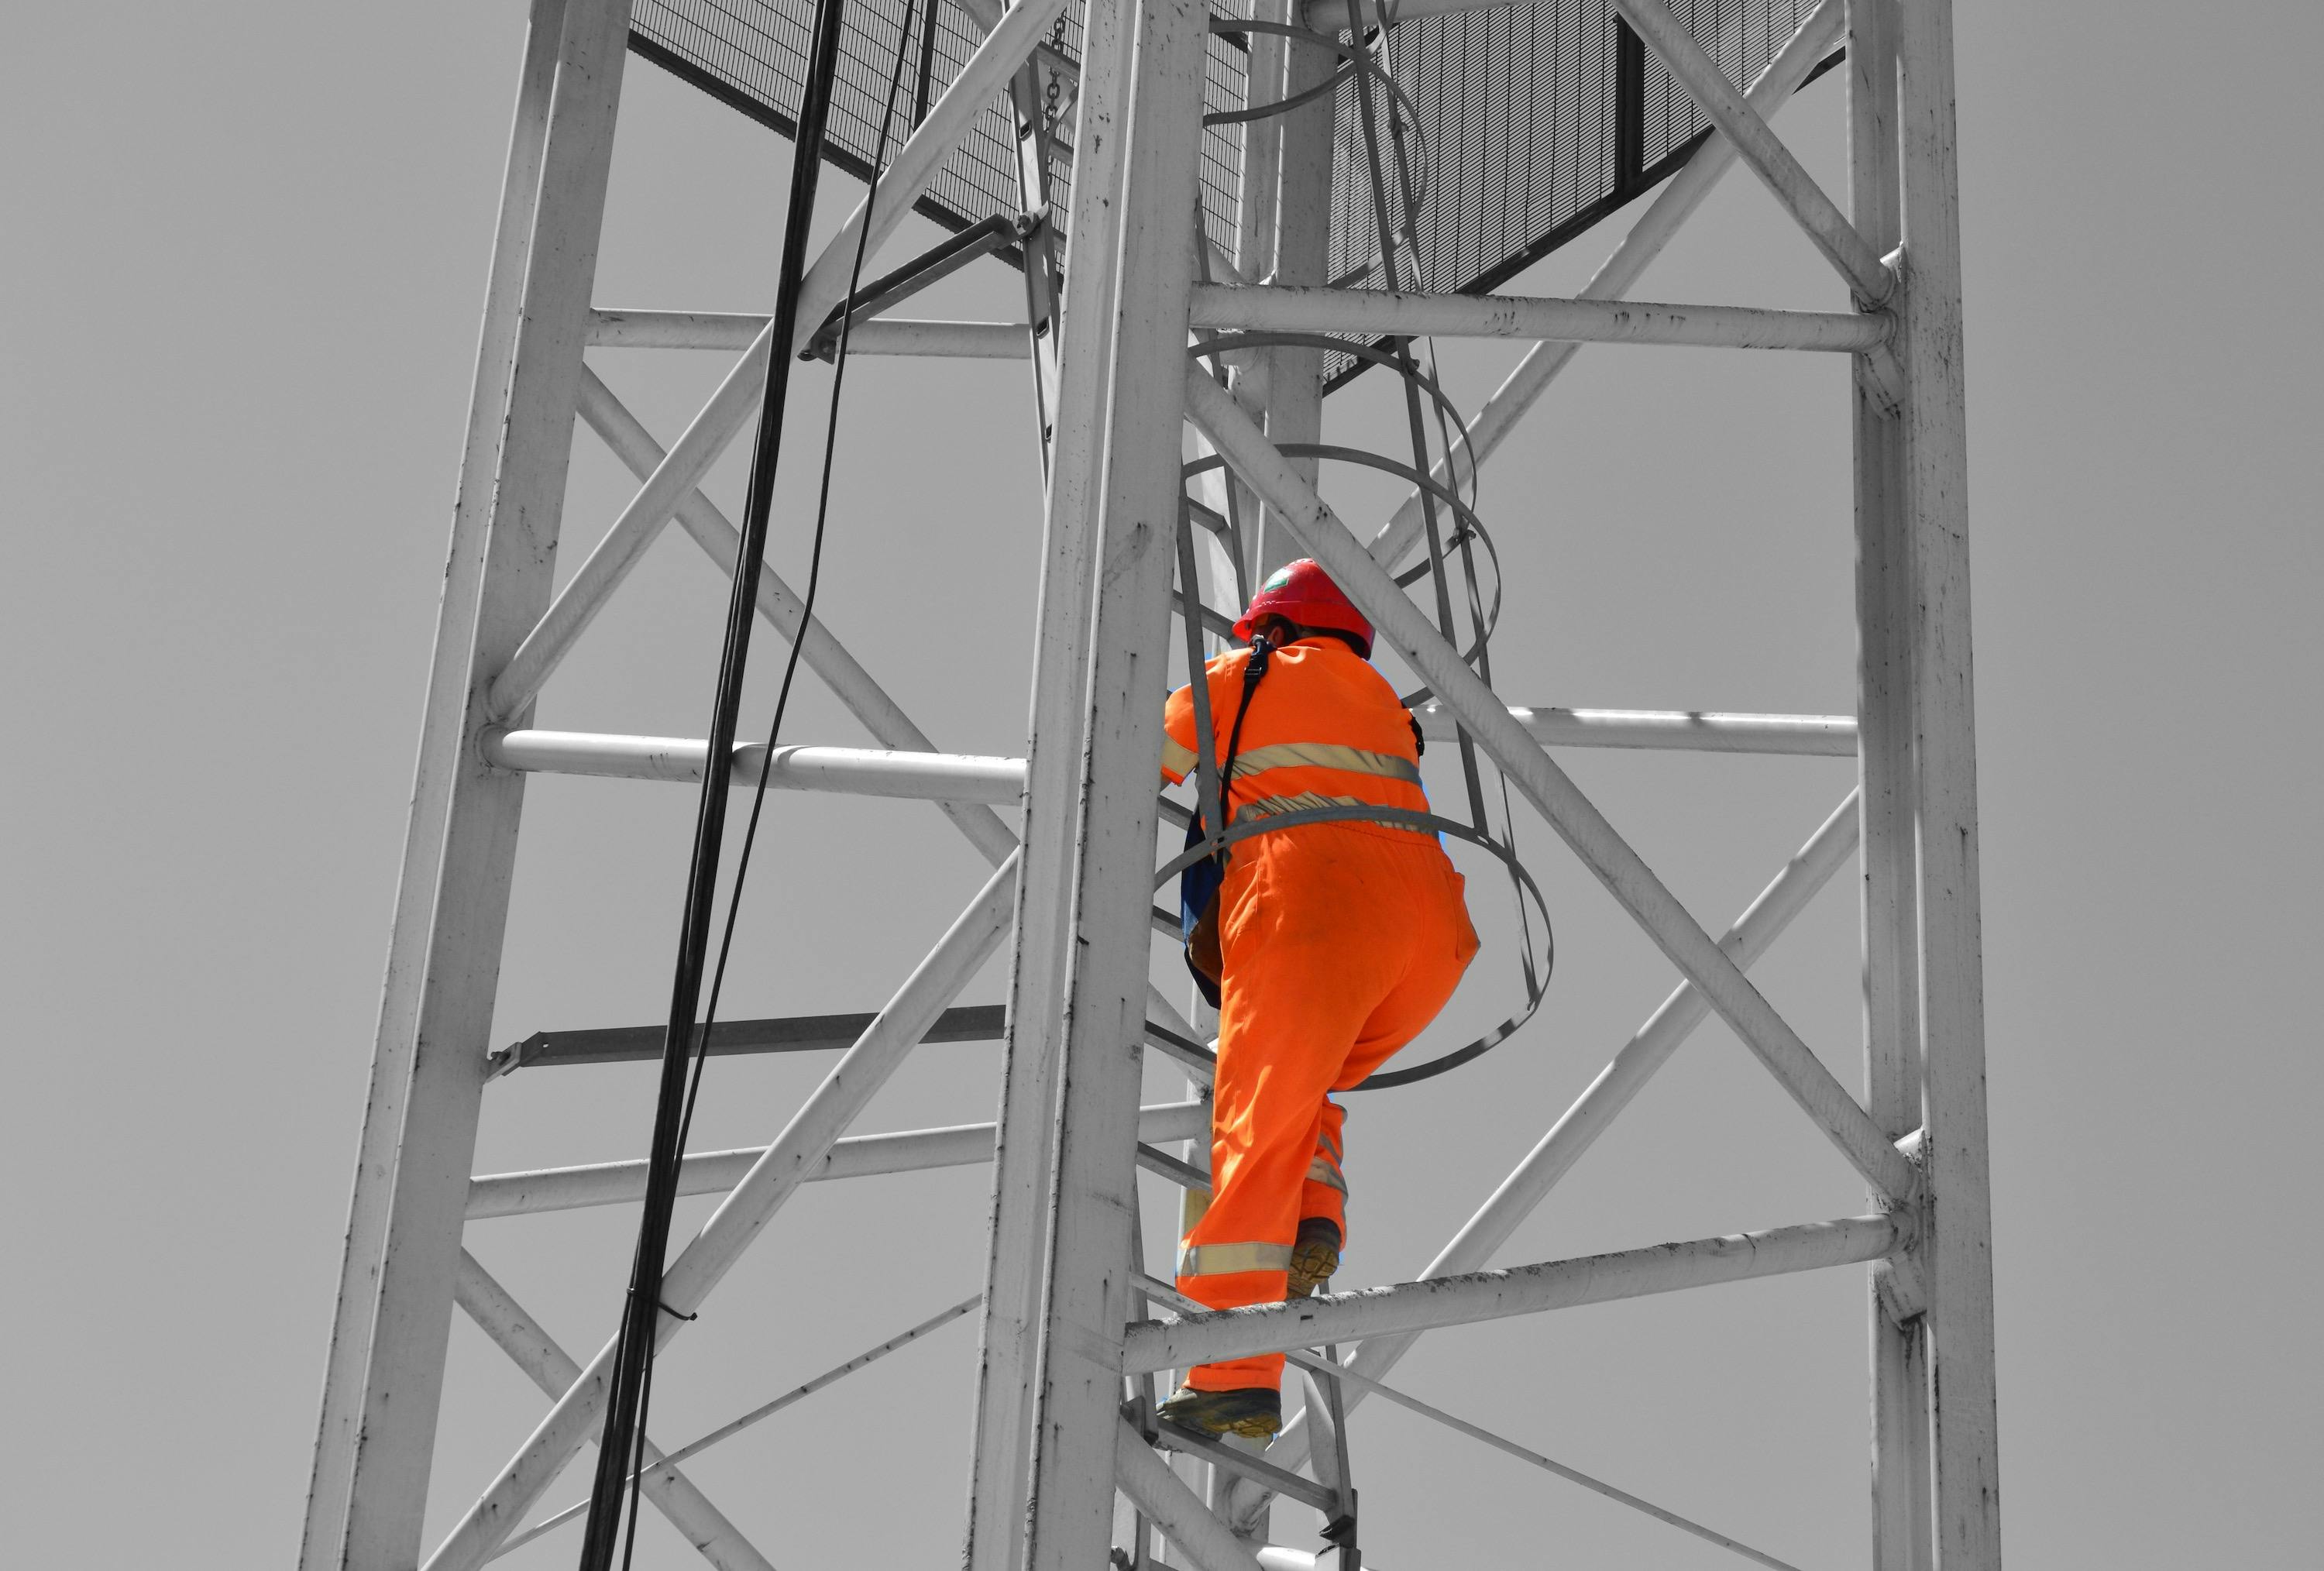 Crane operator climbing up ladder inside crane tower